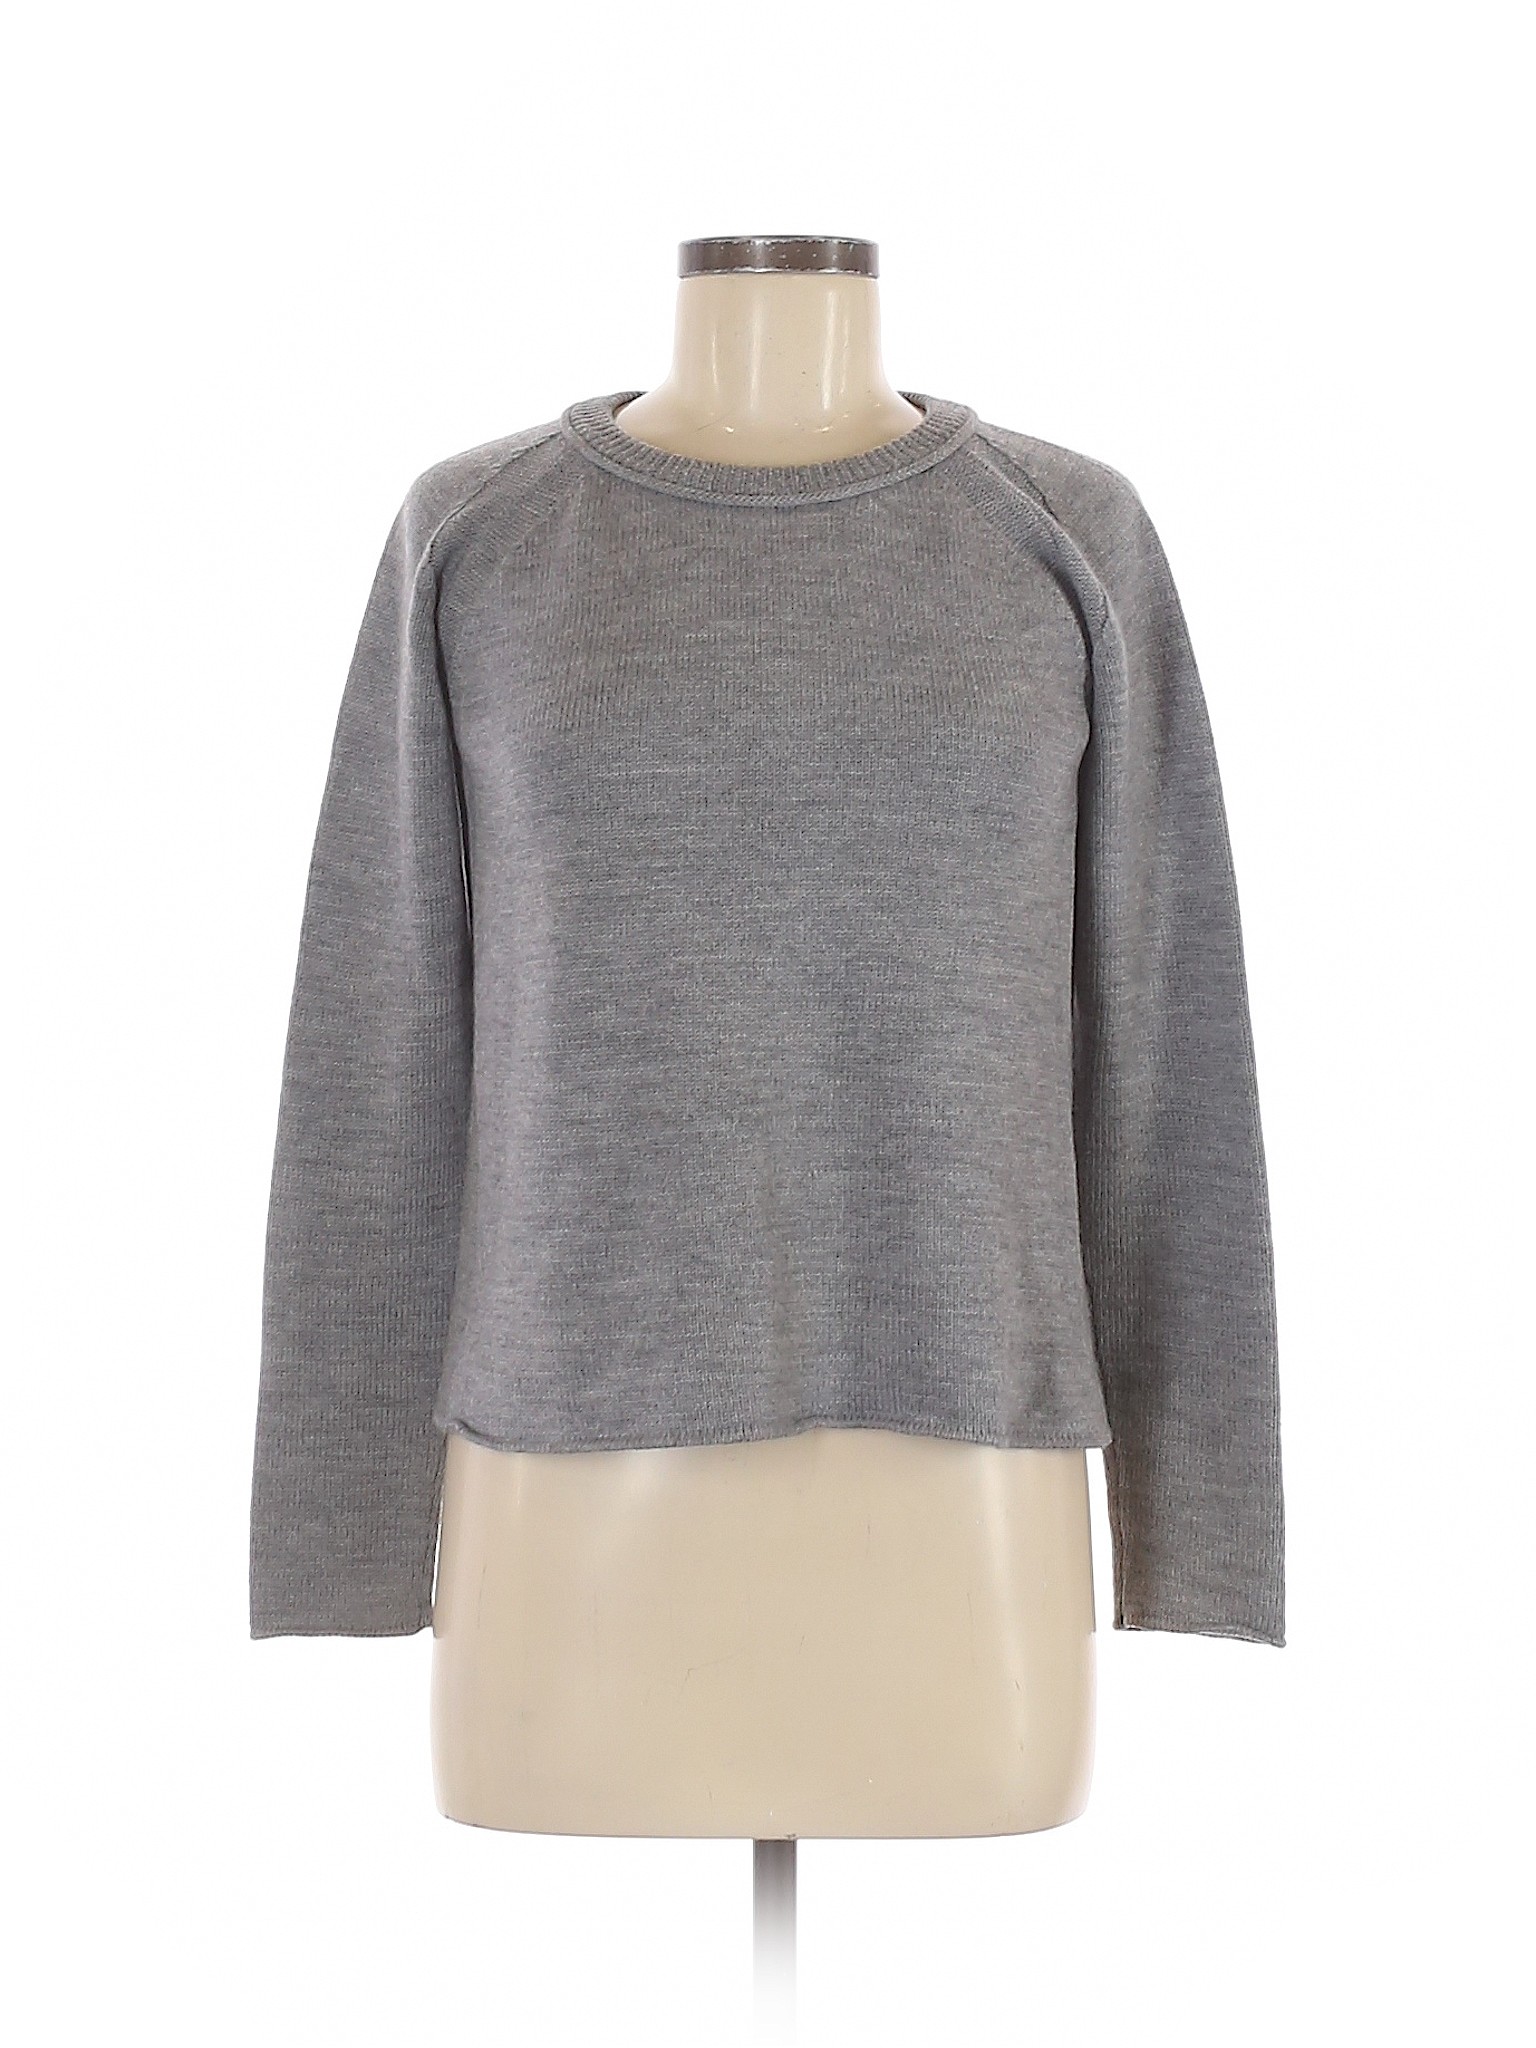 Gorman Women Gray Wool Pullover Sweater 8 | eBay